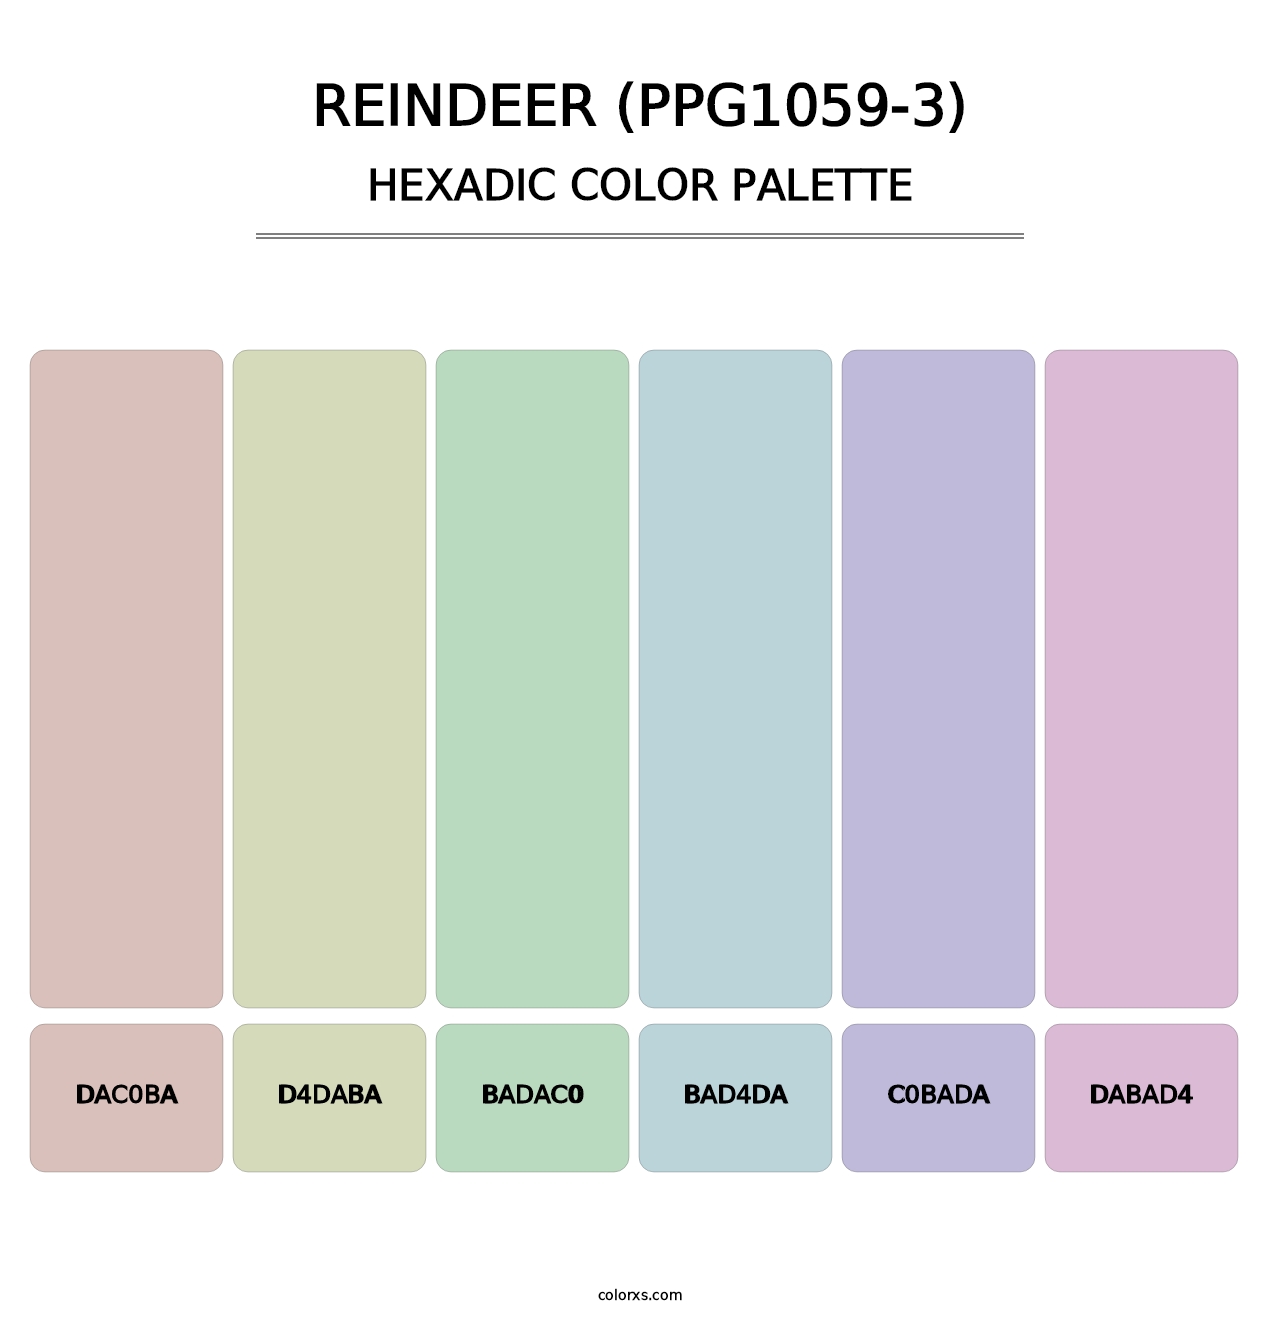 Reindeer (PPG1059-3) - Hexadic Color Palette